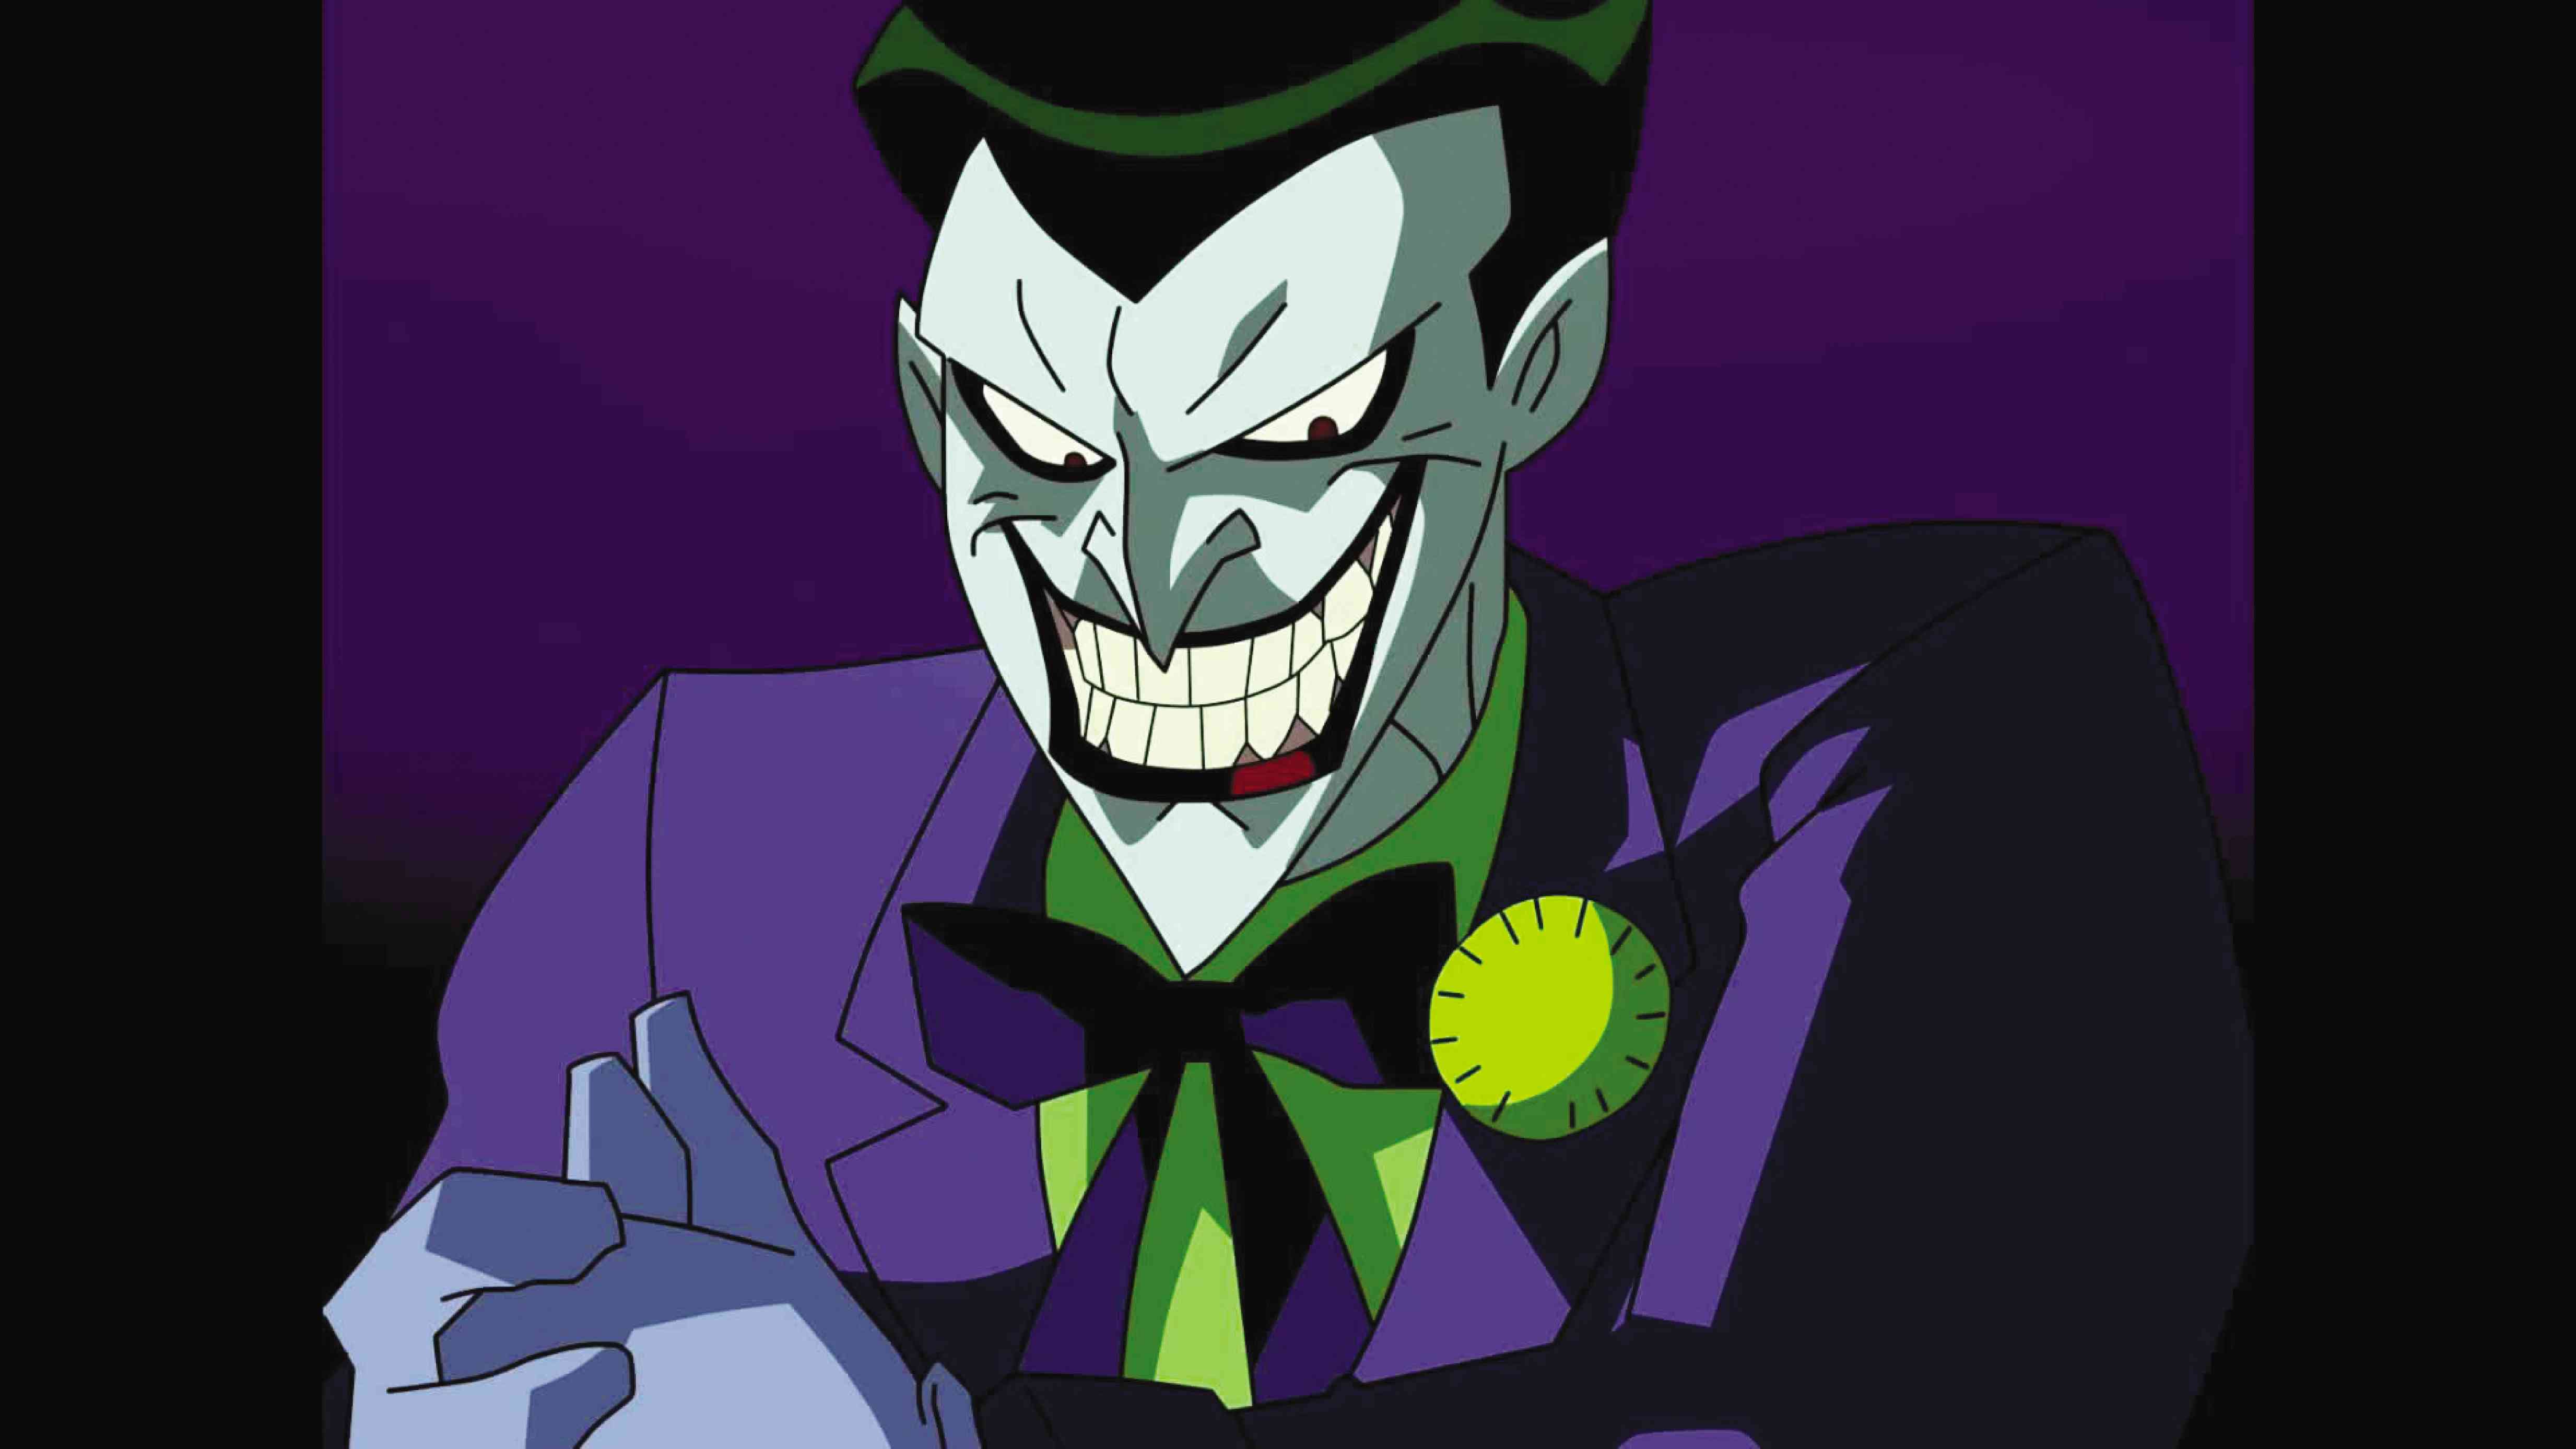 Джокер из Бэтмена 1992. Джокер из Анимейтед Сериес. Джокер Анимейтед Сериес 1992.